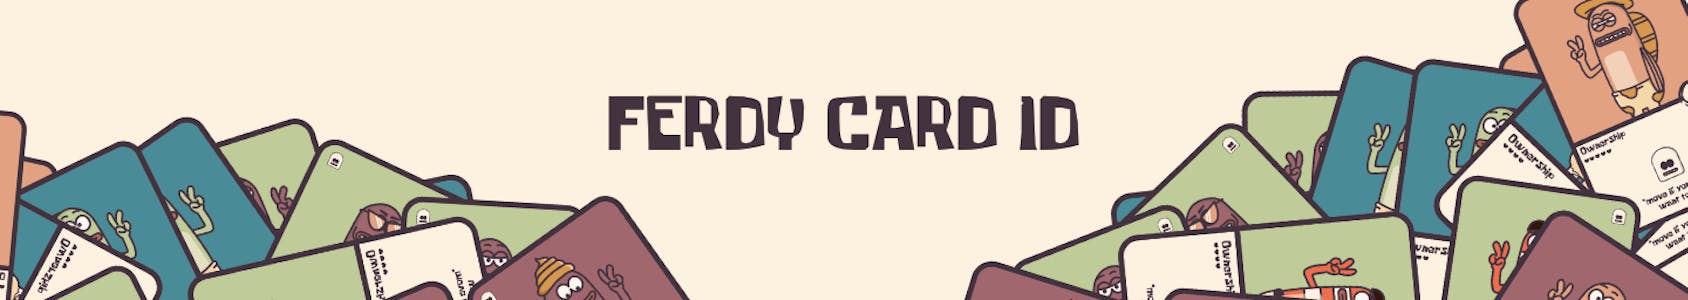 Ferdy Card ID